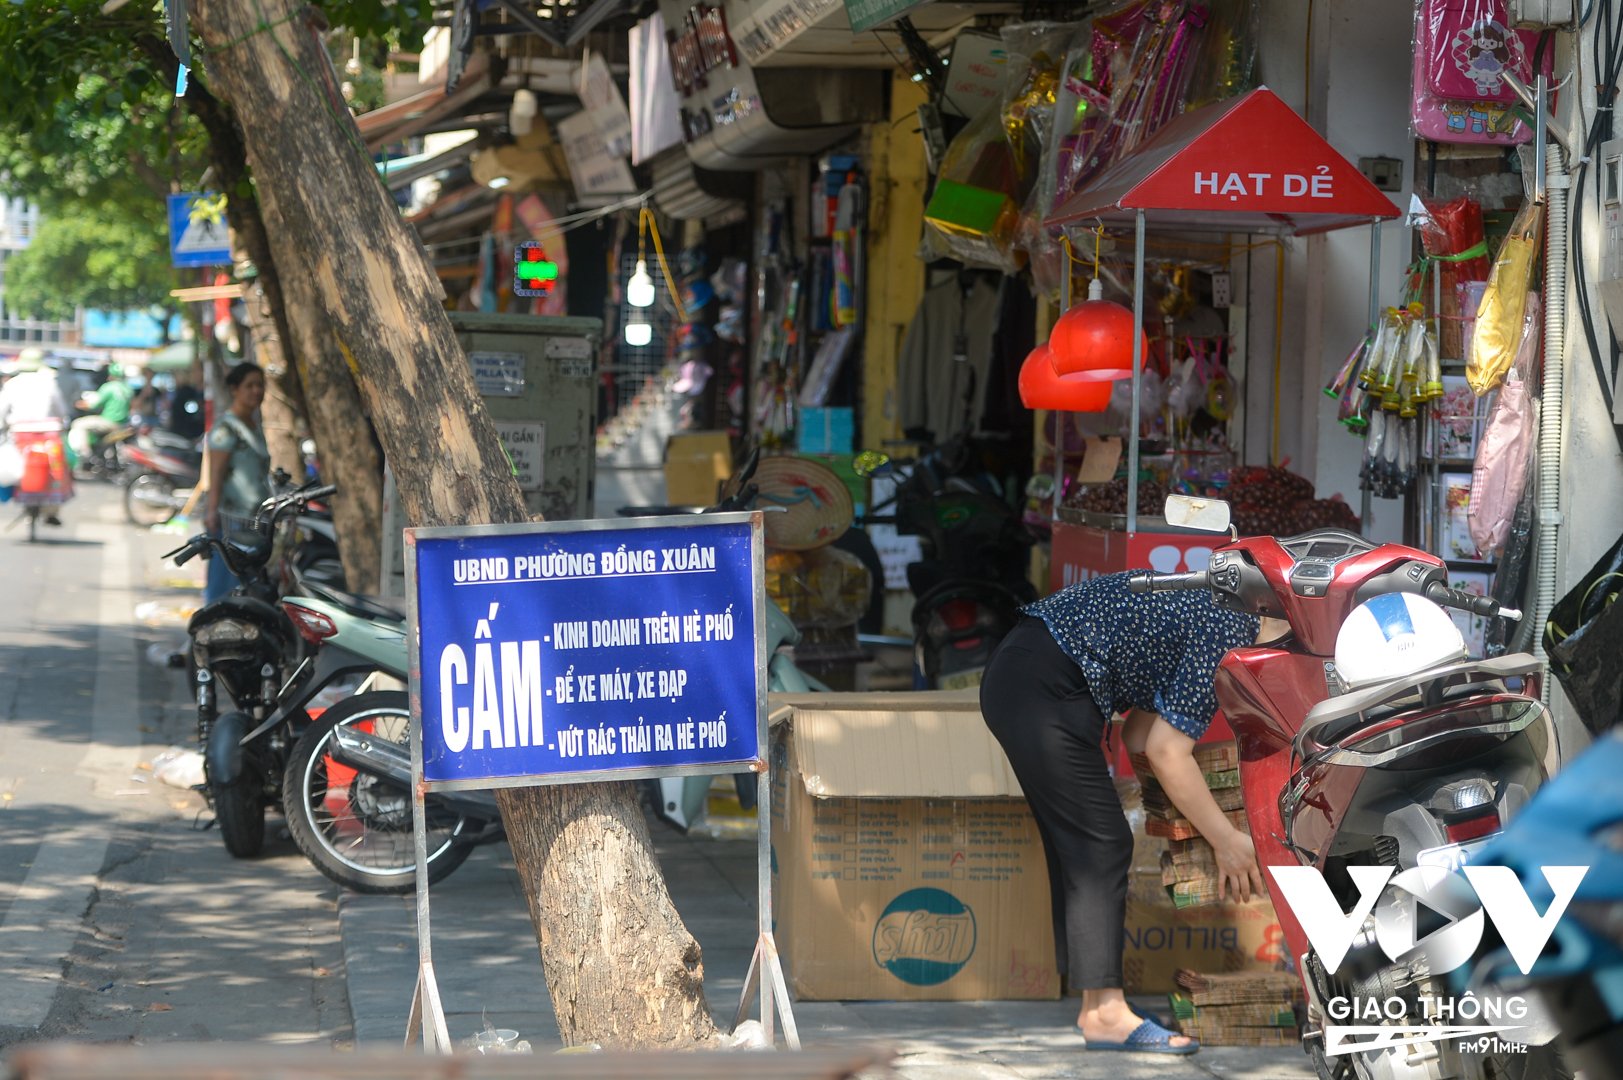 Mặc dù UBND phường Đồng Xuân đã đặt biển cấm, tuy nhiên sau tấm biển vẫn xảy ra việc để xe máy trên hè phố, lấn vỉa hè để kinh doanh,...